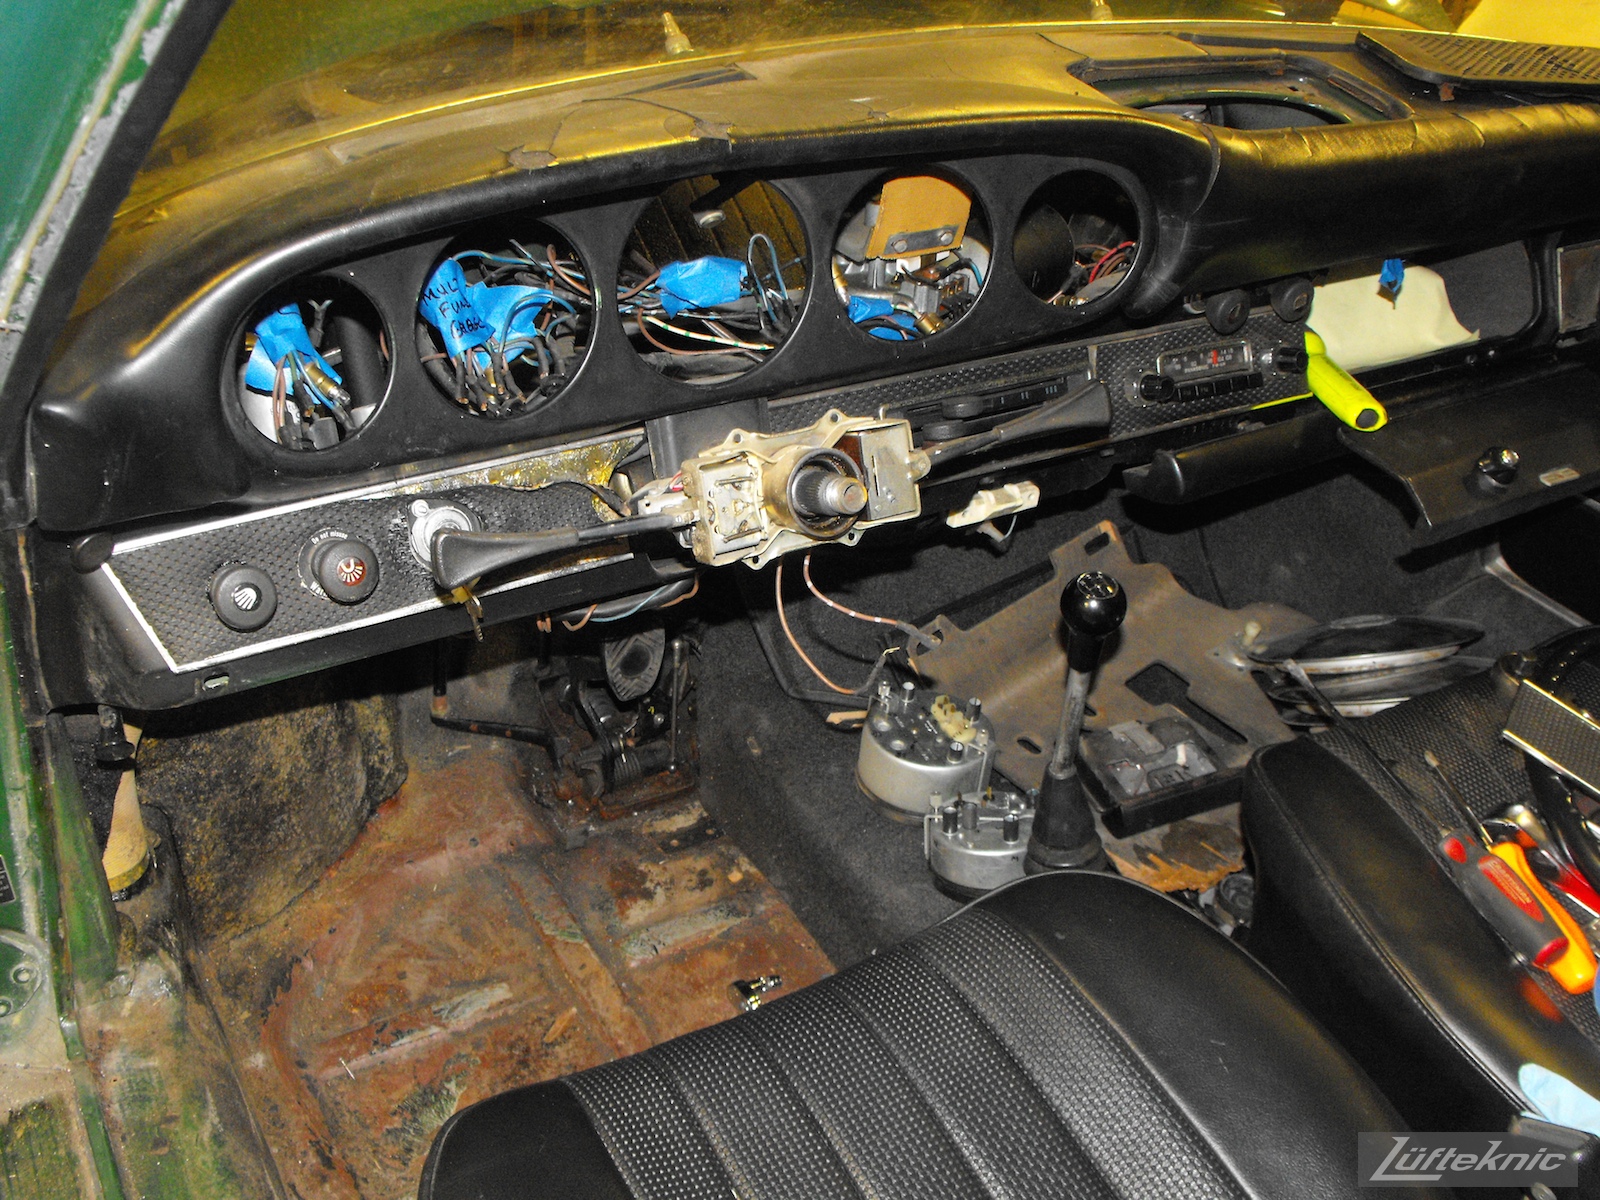 Stripped down dashboard and interior of an Irish Green Porsche 912 undergoing restoration at Lufteknic.